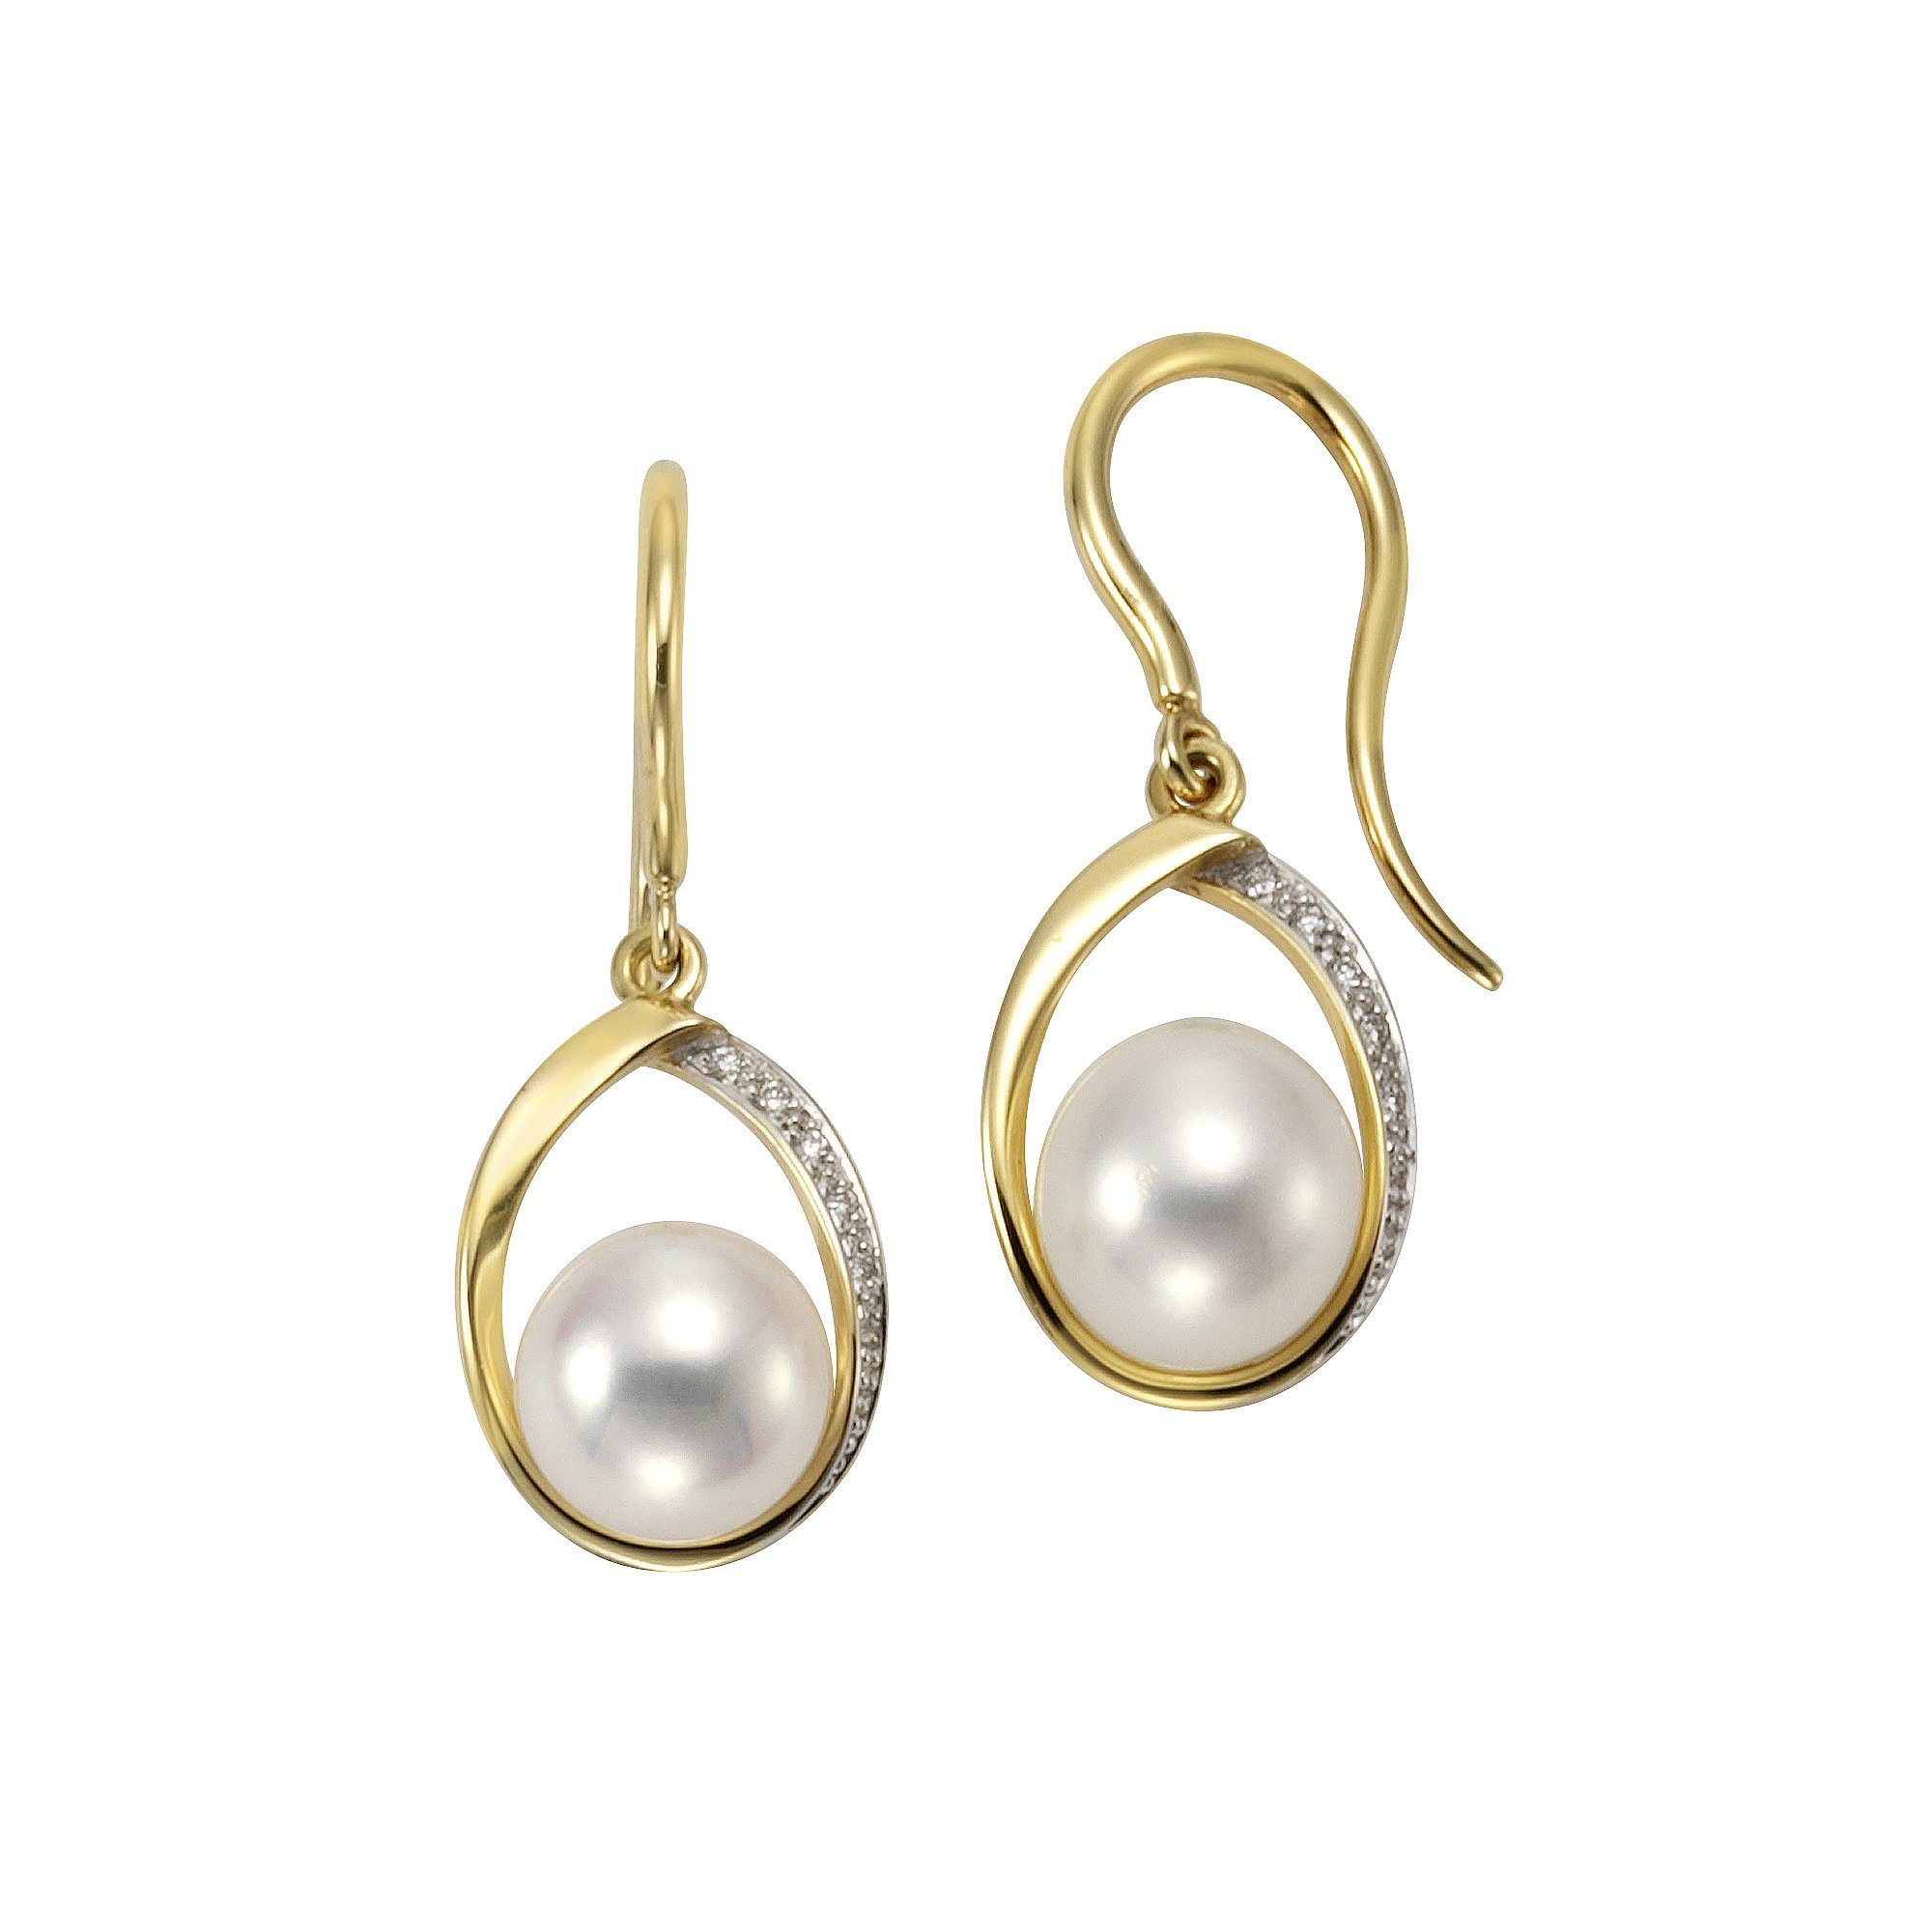 Orolino Paar Ohrhaken 585 Gold Perlen weiß 7,5-8mm + 14x Brillant 0,04ct. | Ohrhaken